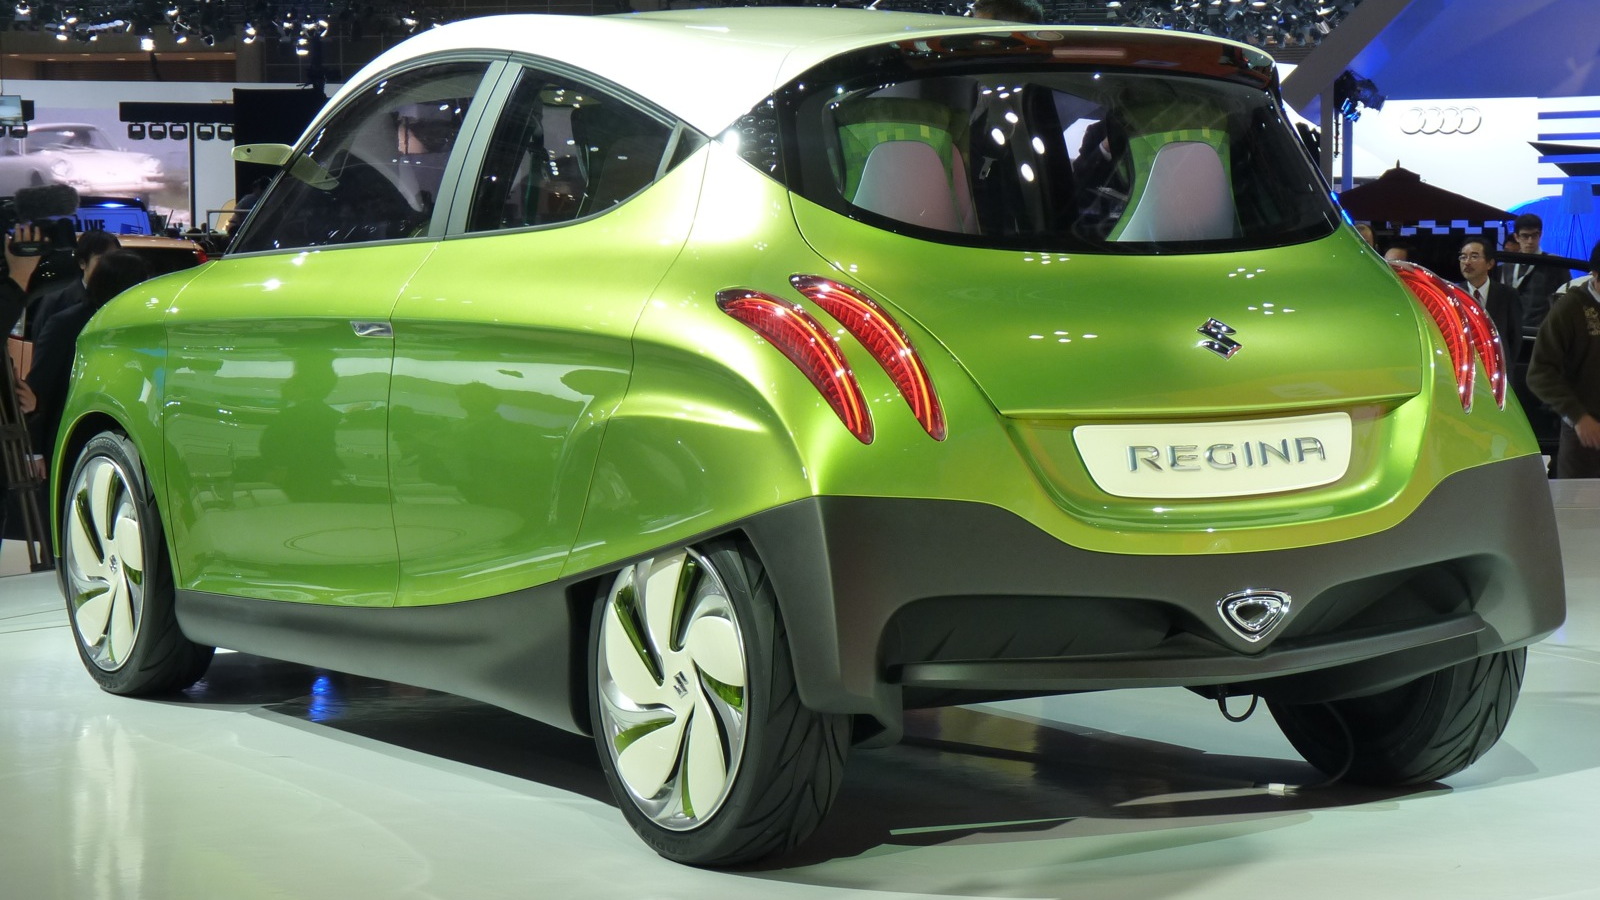 2011 Suzuki Regina concept